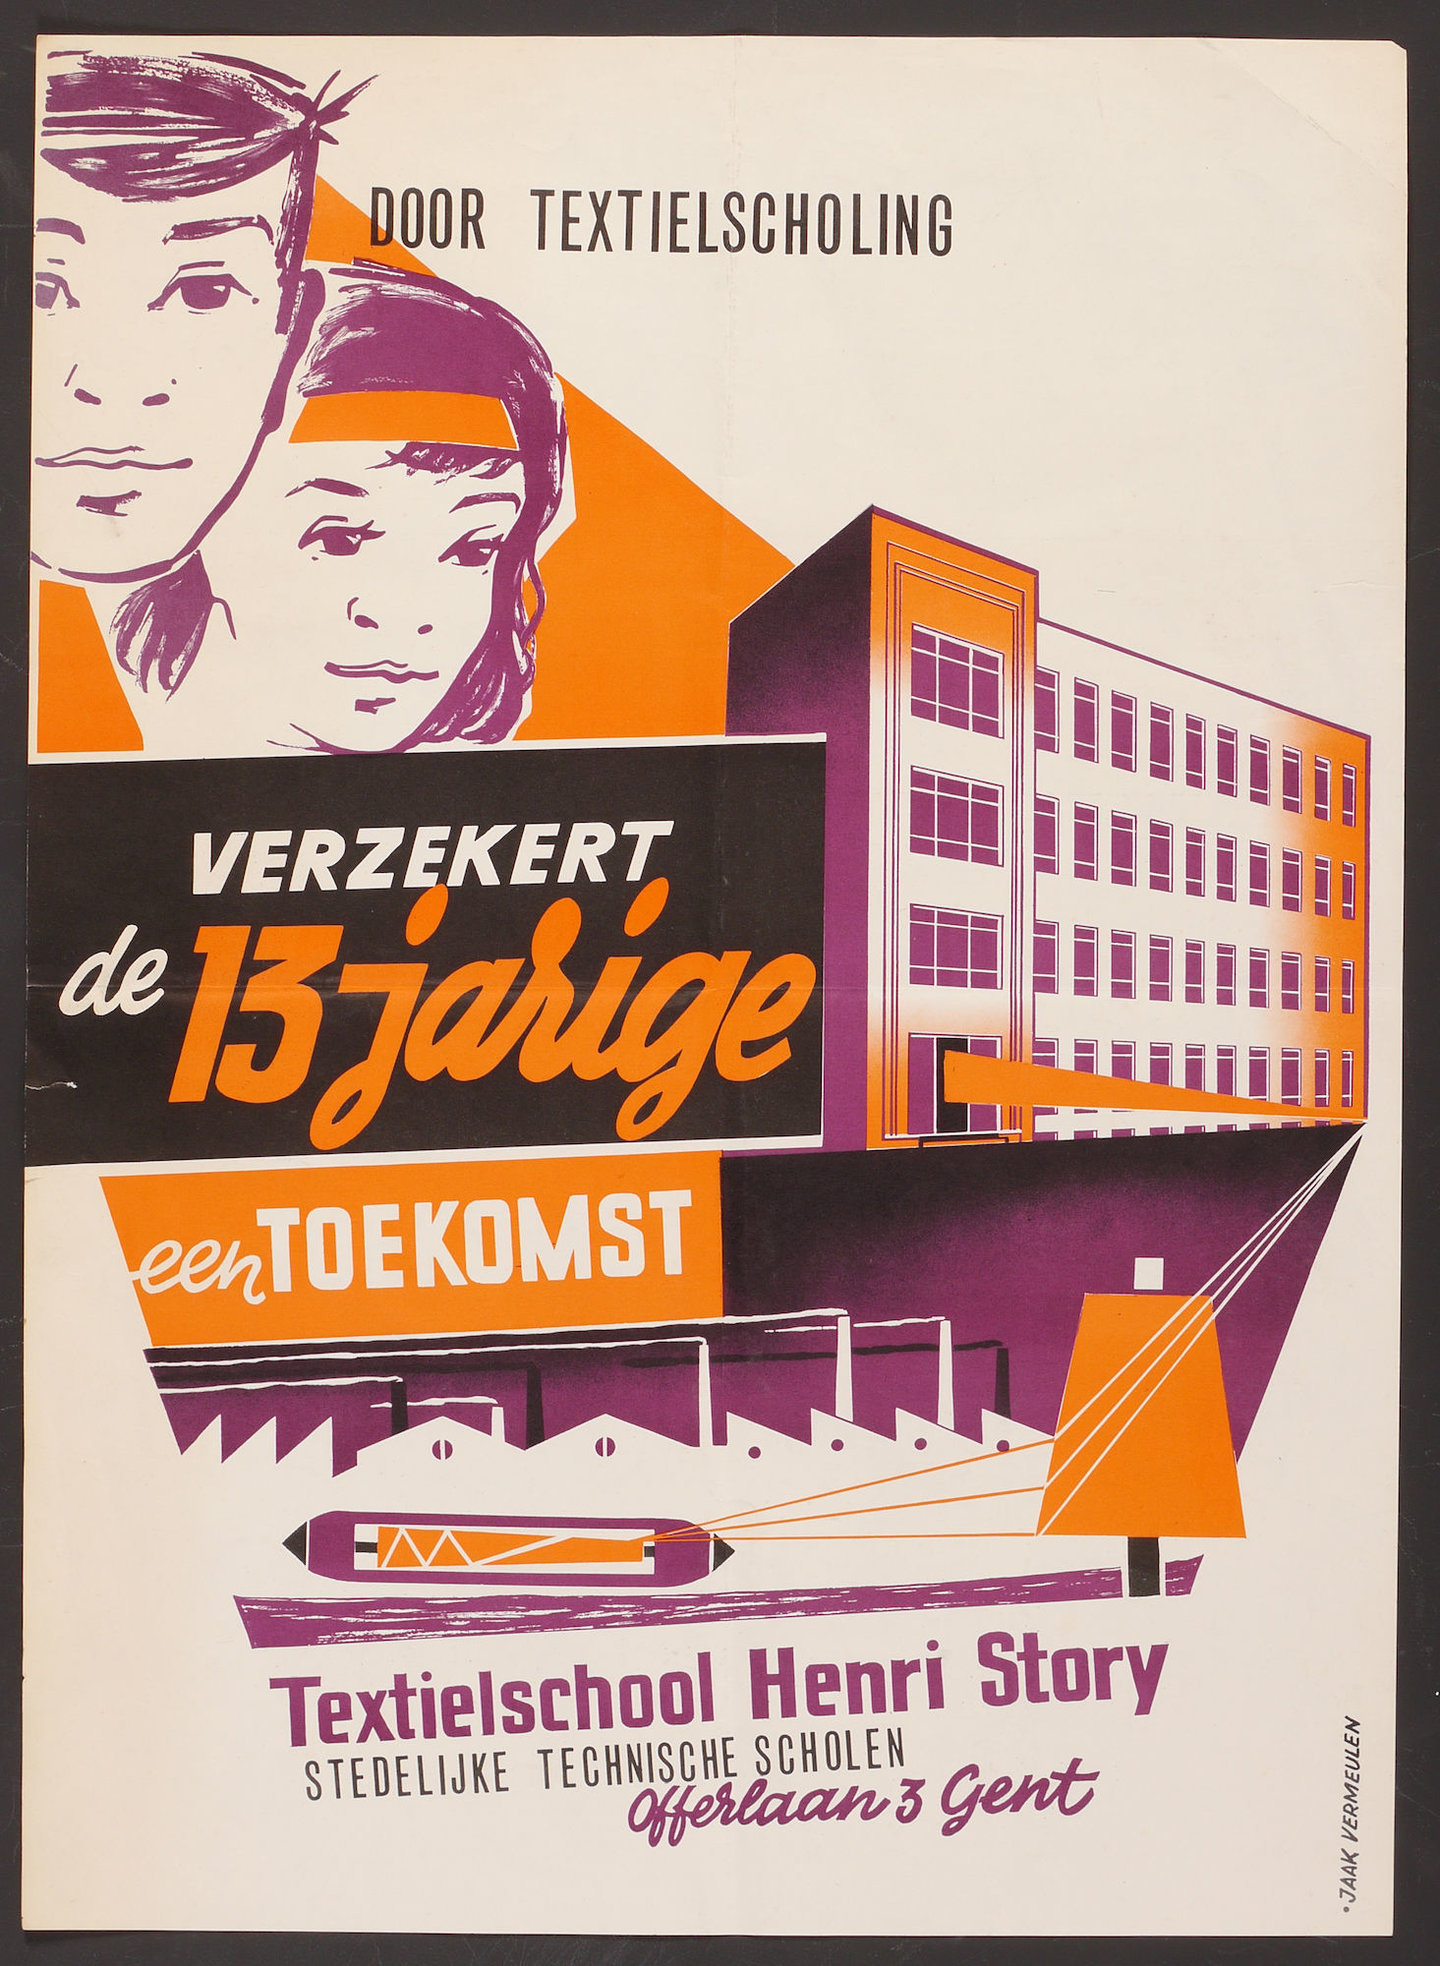 Publiciteitsaffiche voor de Stedelijke Textielschool Henri Story